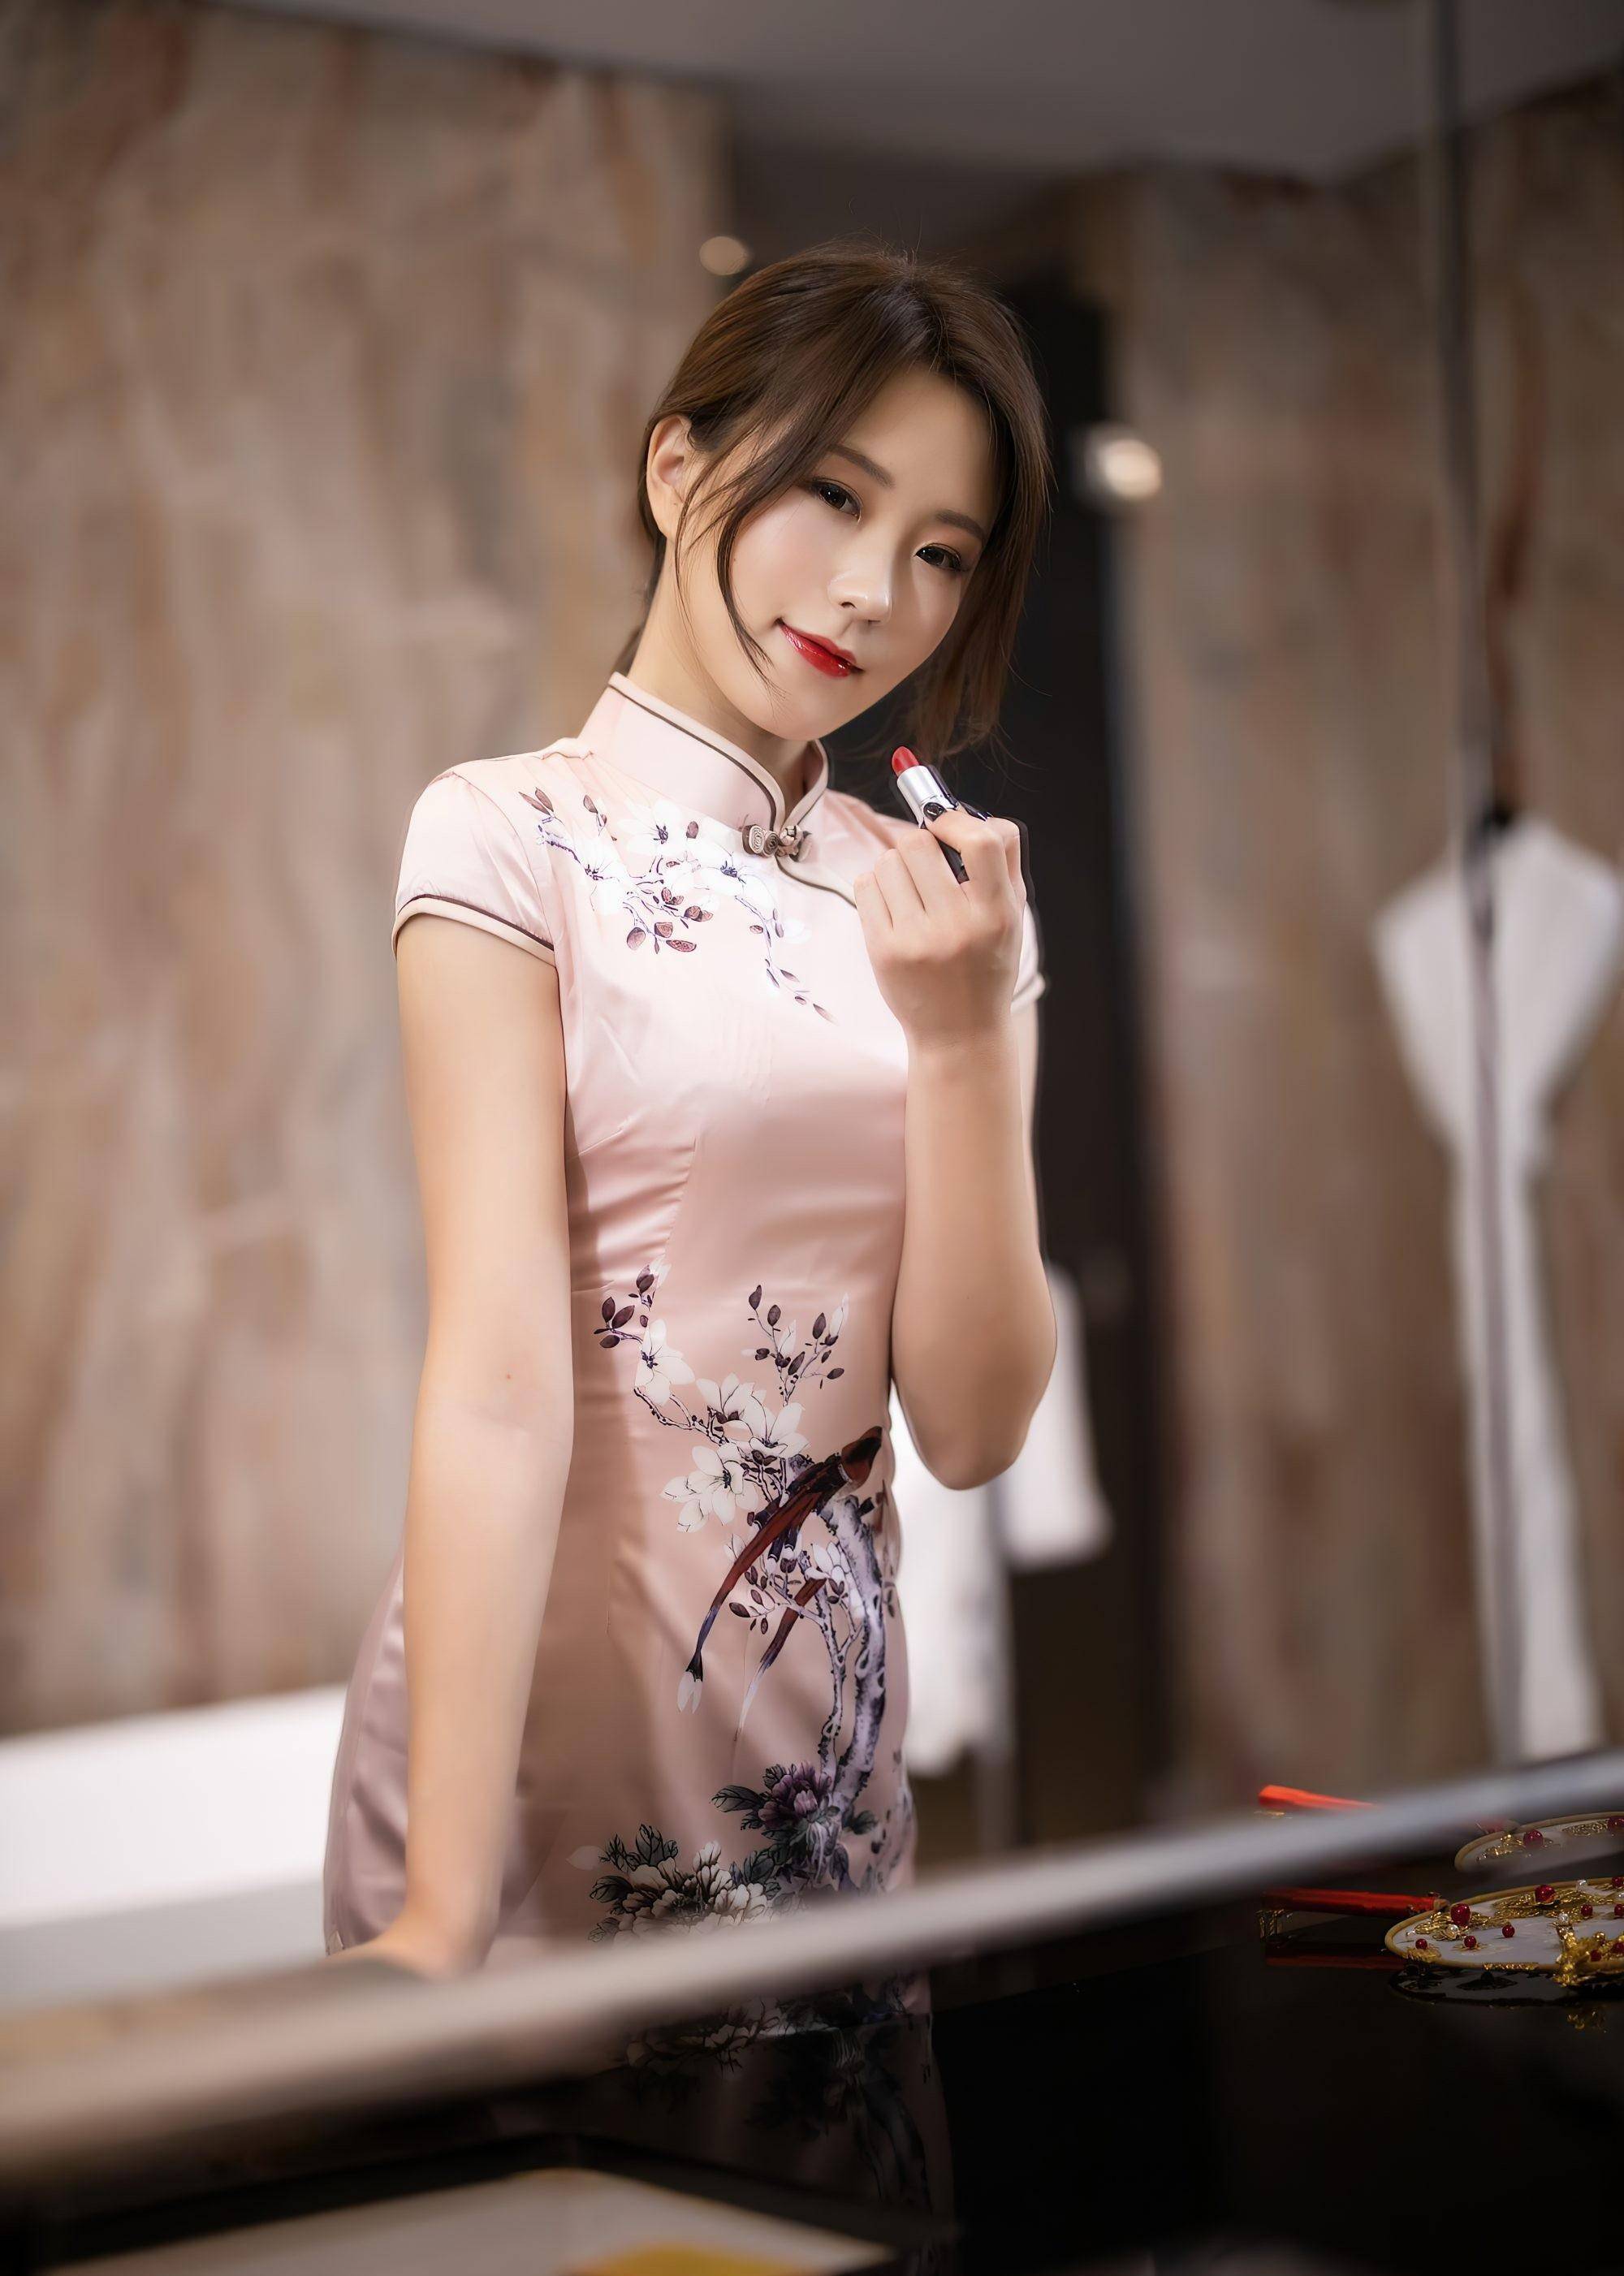 中式唯美,一袭典雅旗袍传承经典,绽放东方女性魅力